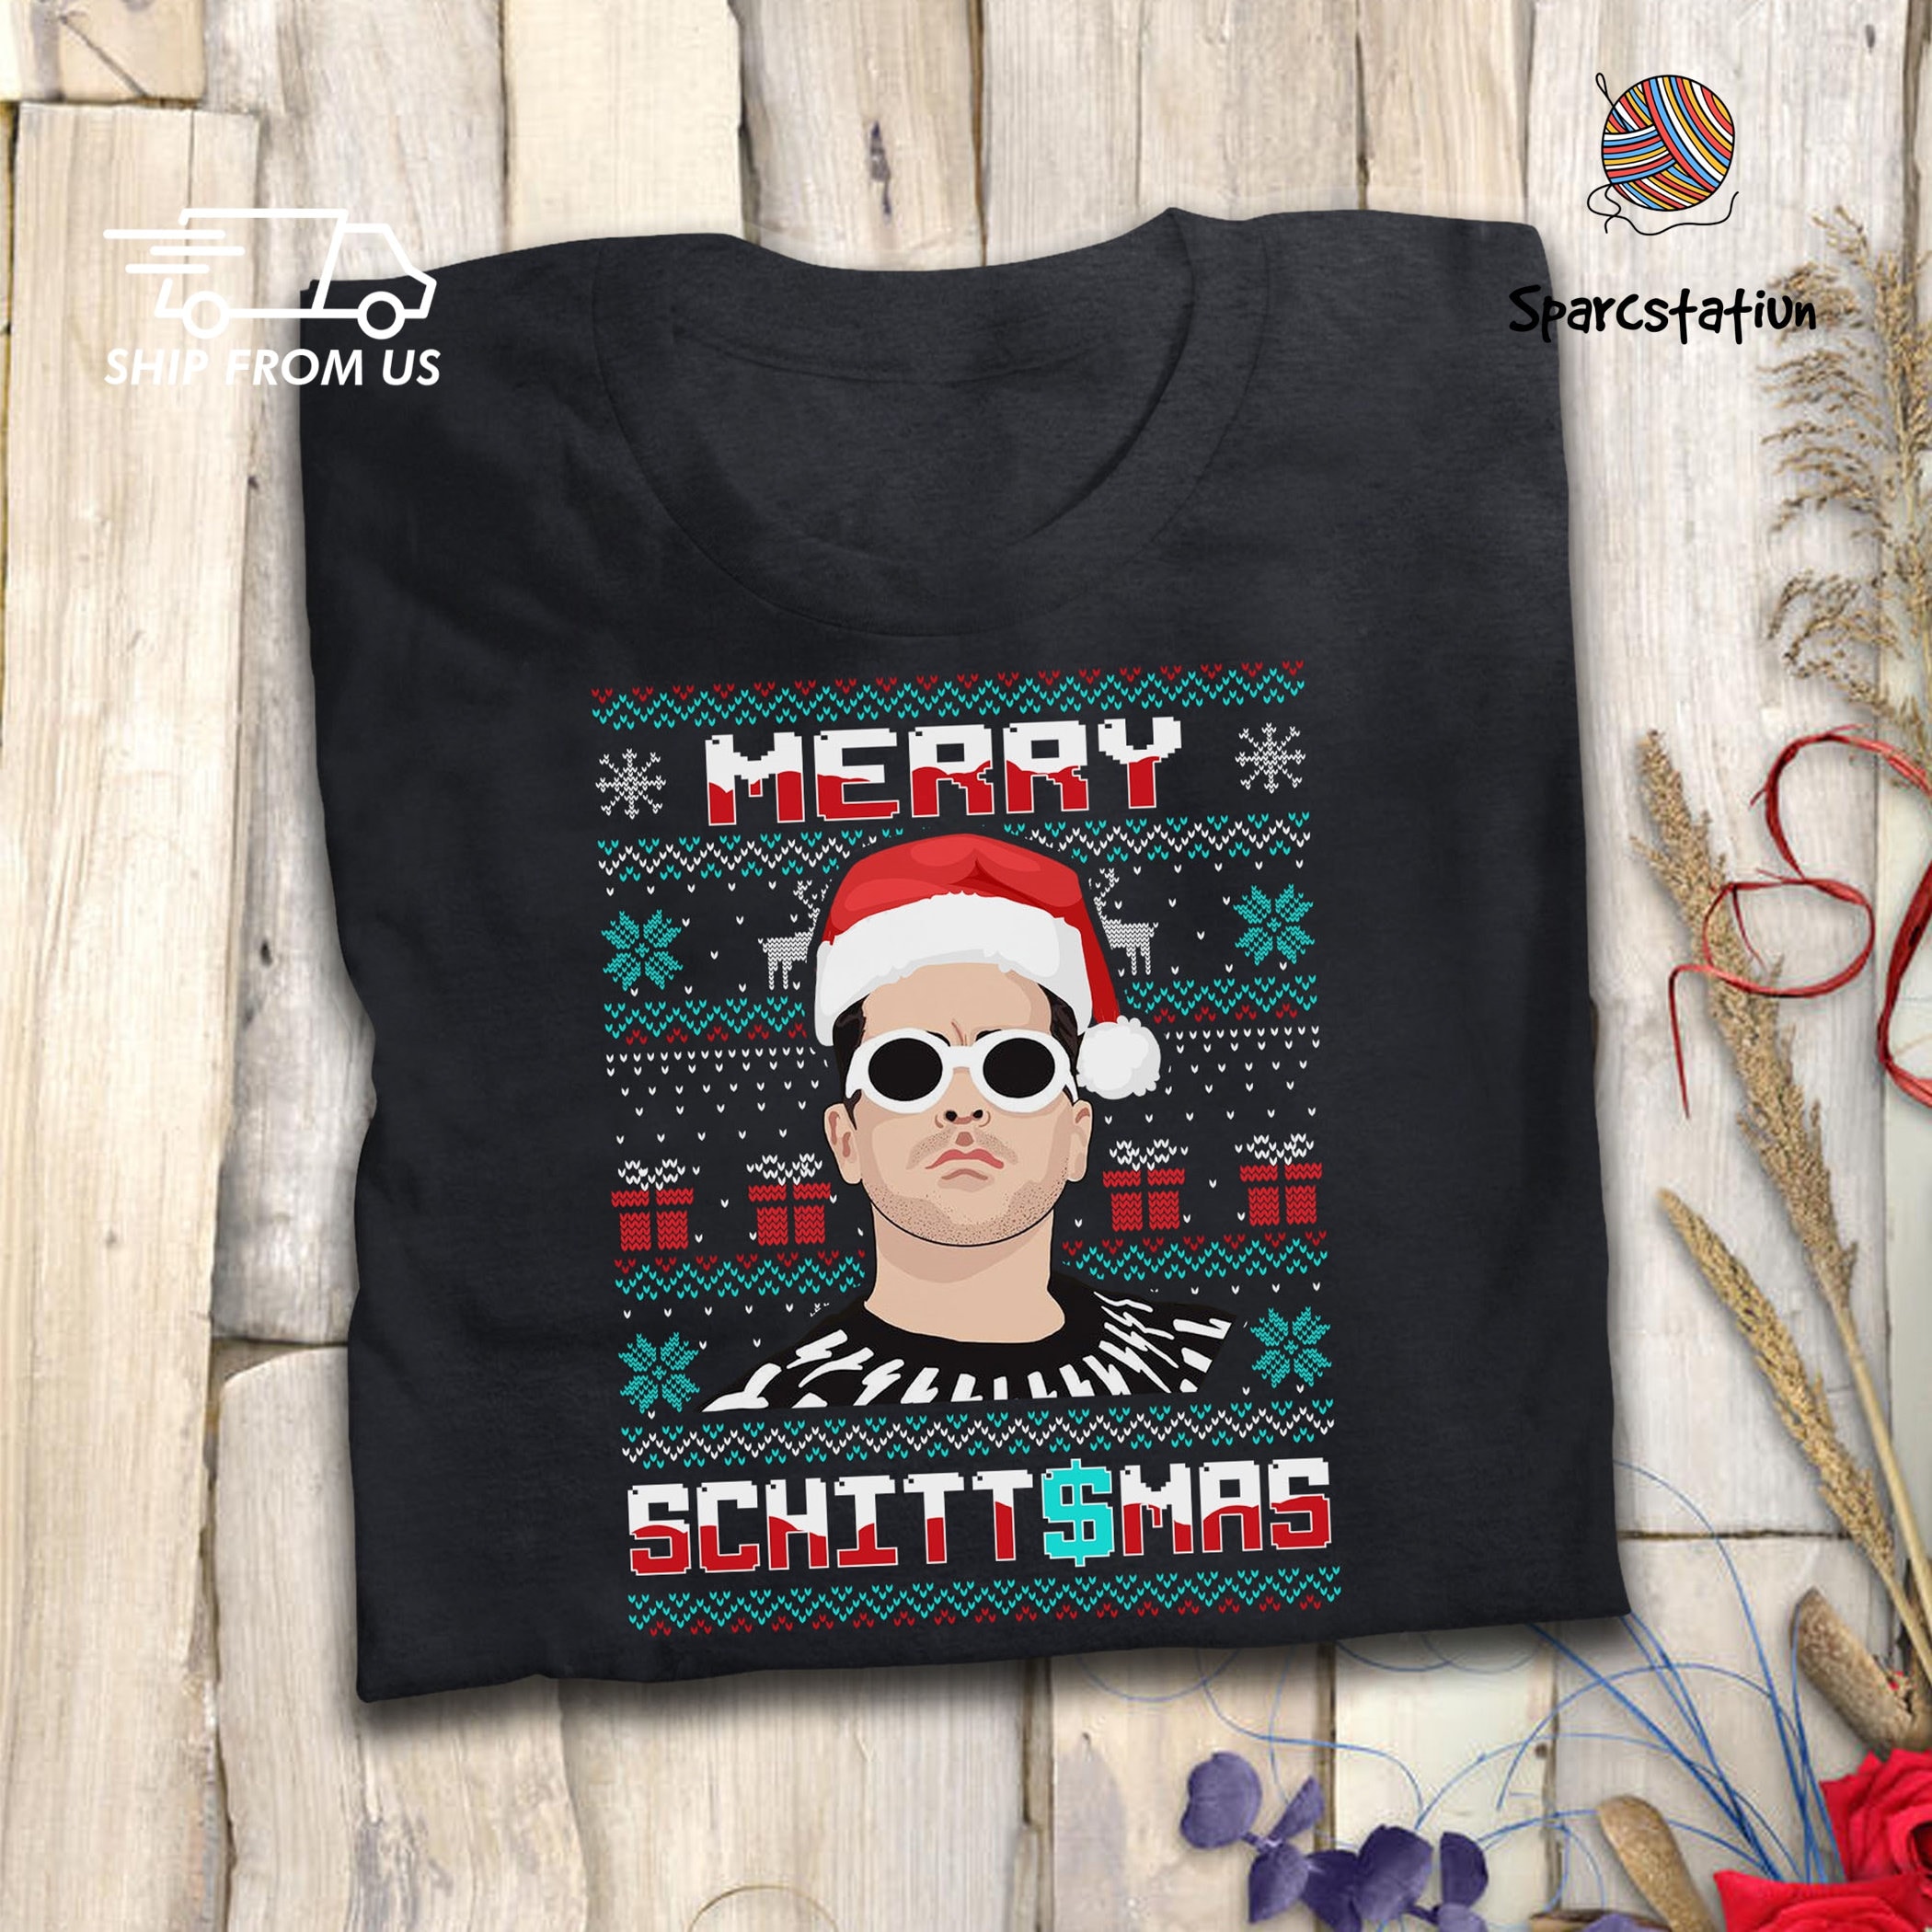 Merry Schittsmas T Shirt David Rose Shirt Schitt's Creek T Shirt Christmas Gifts